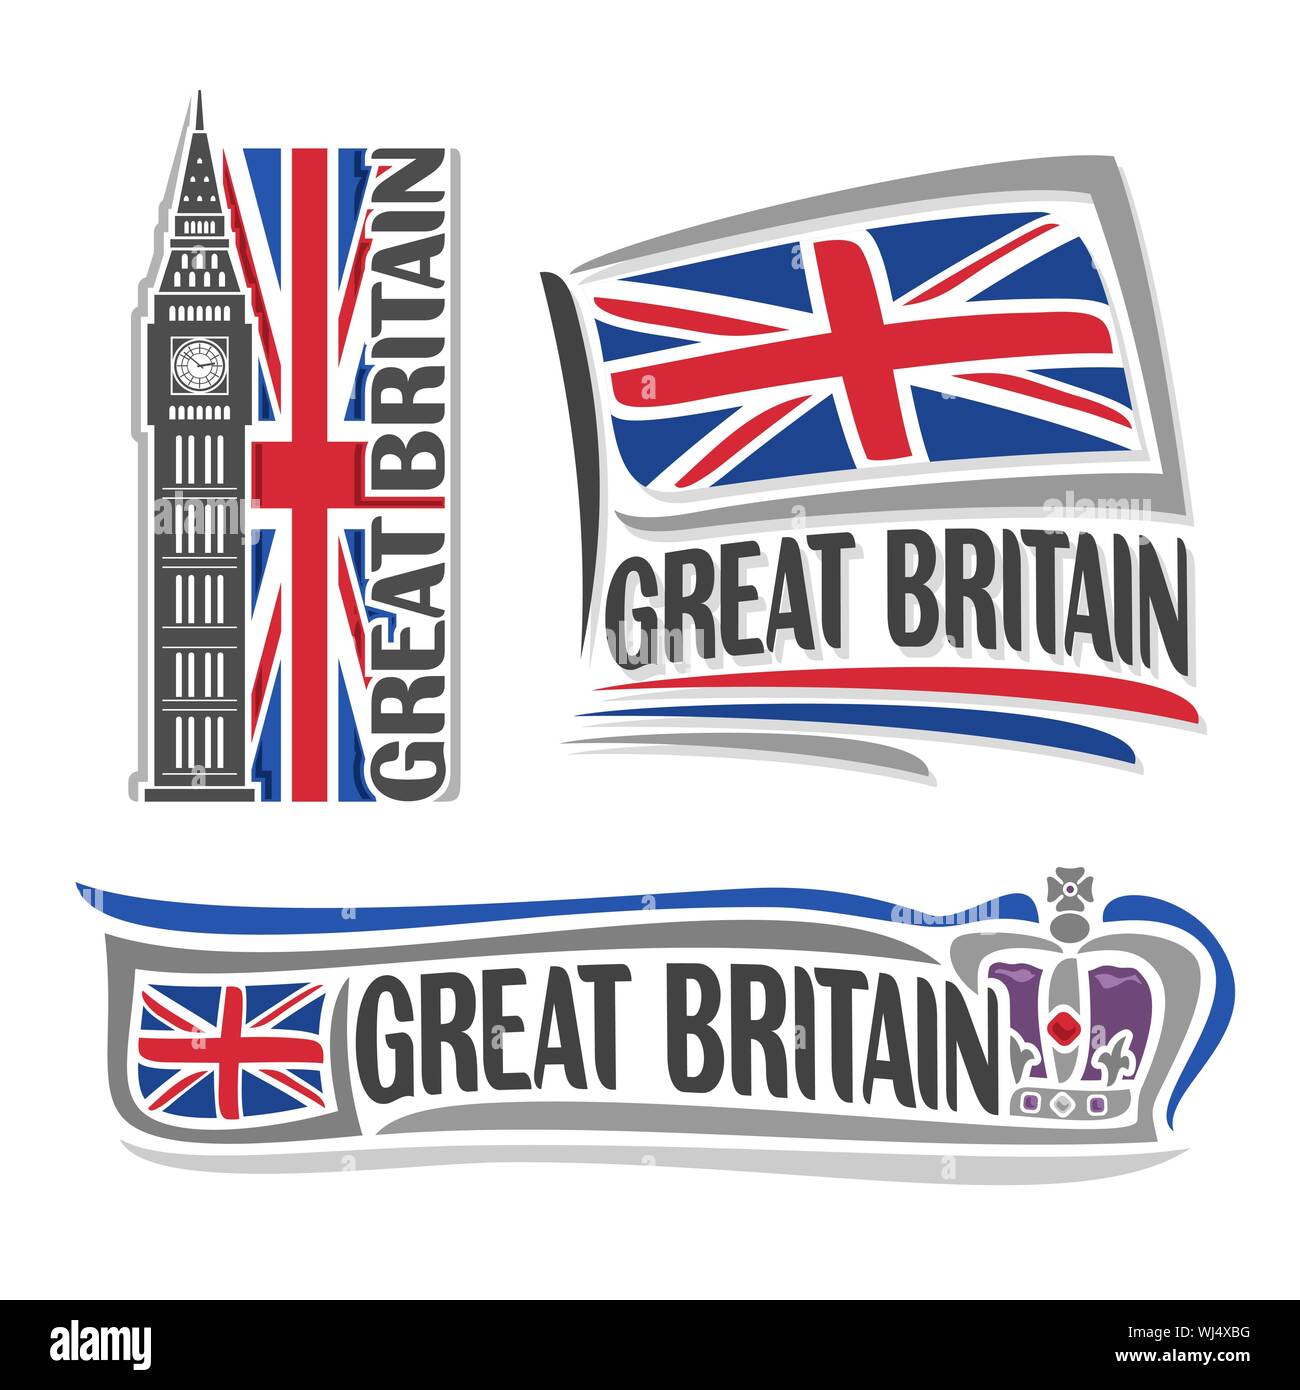 Illustrazione Vettoriale logo per Gran Bretagna architettura, 3 illustrazioni isolate: bandiera Union Jack con il Big Ben, inglese britannico simbolo del Regno re Illustrazione Vettoriale